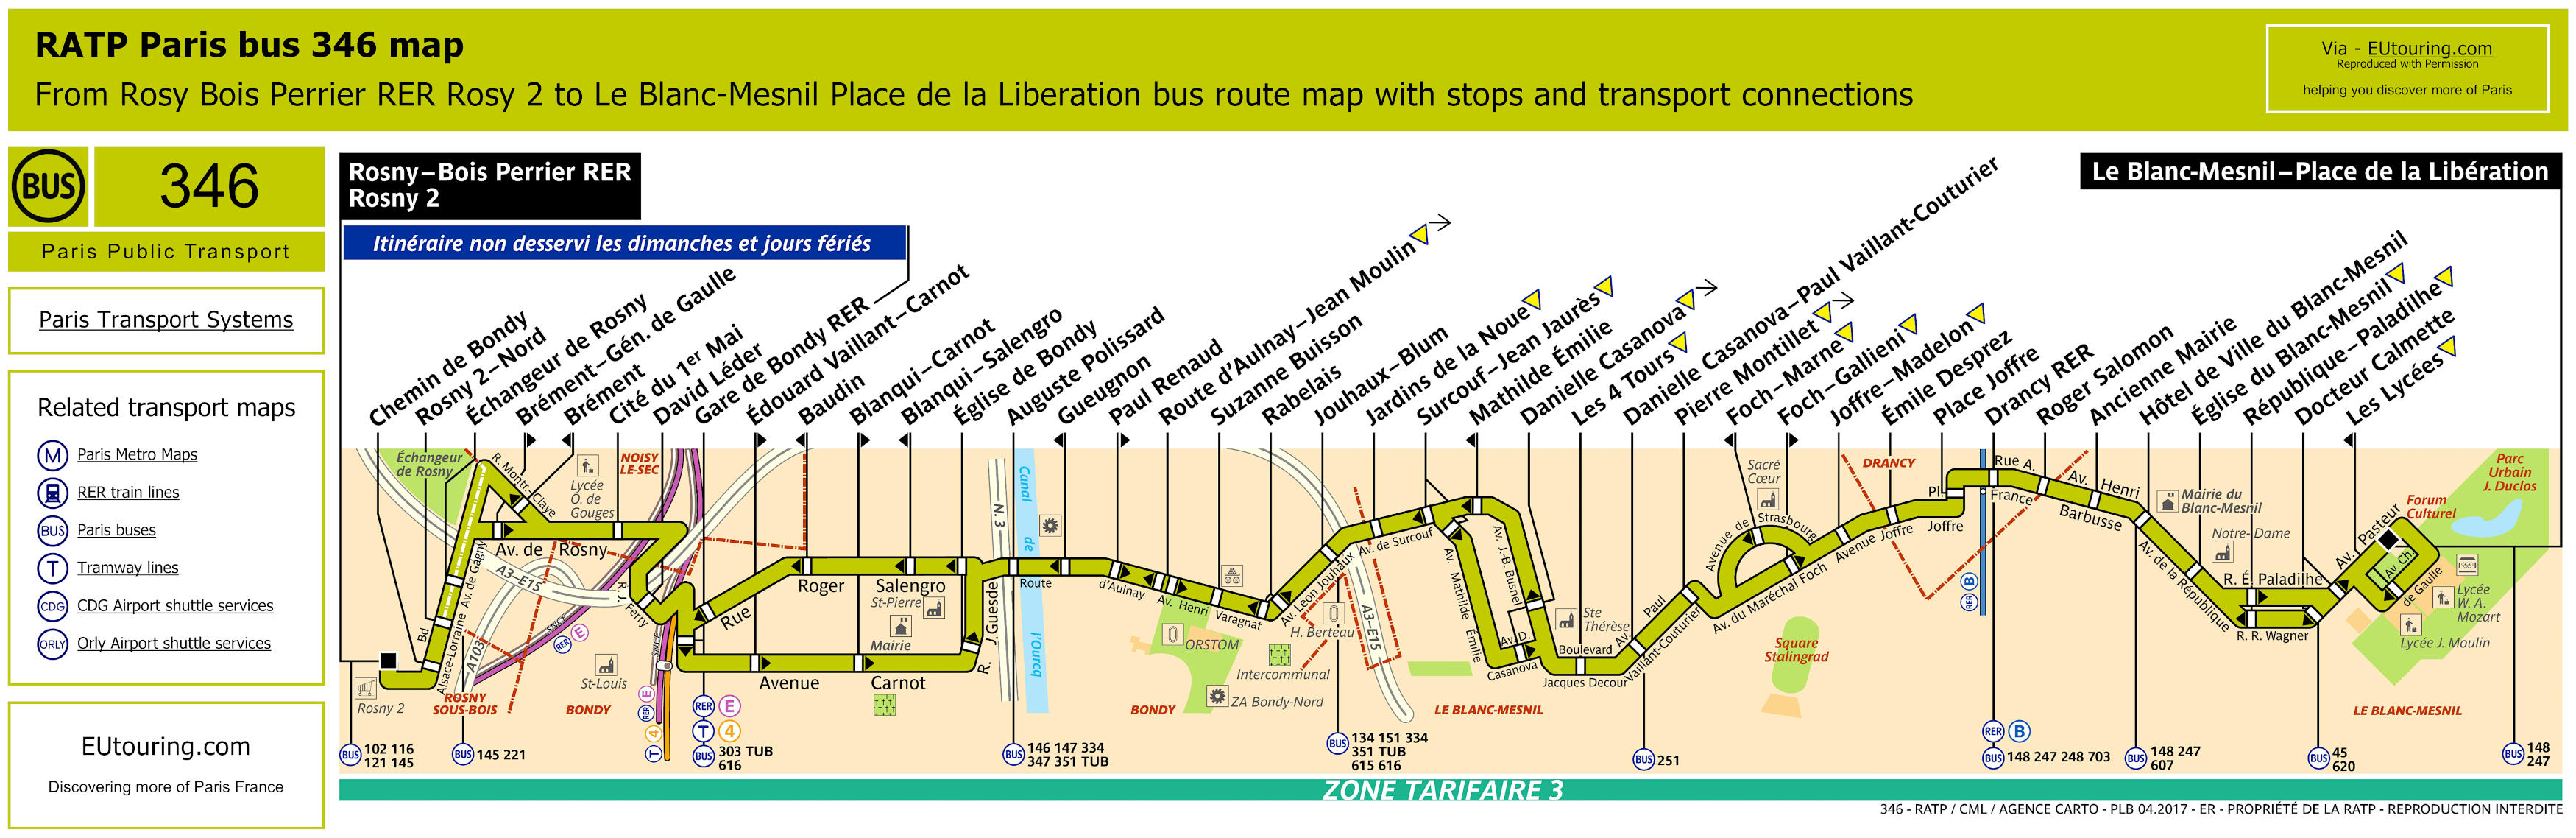 Paris bus 346 route maps available.